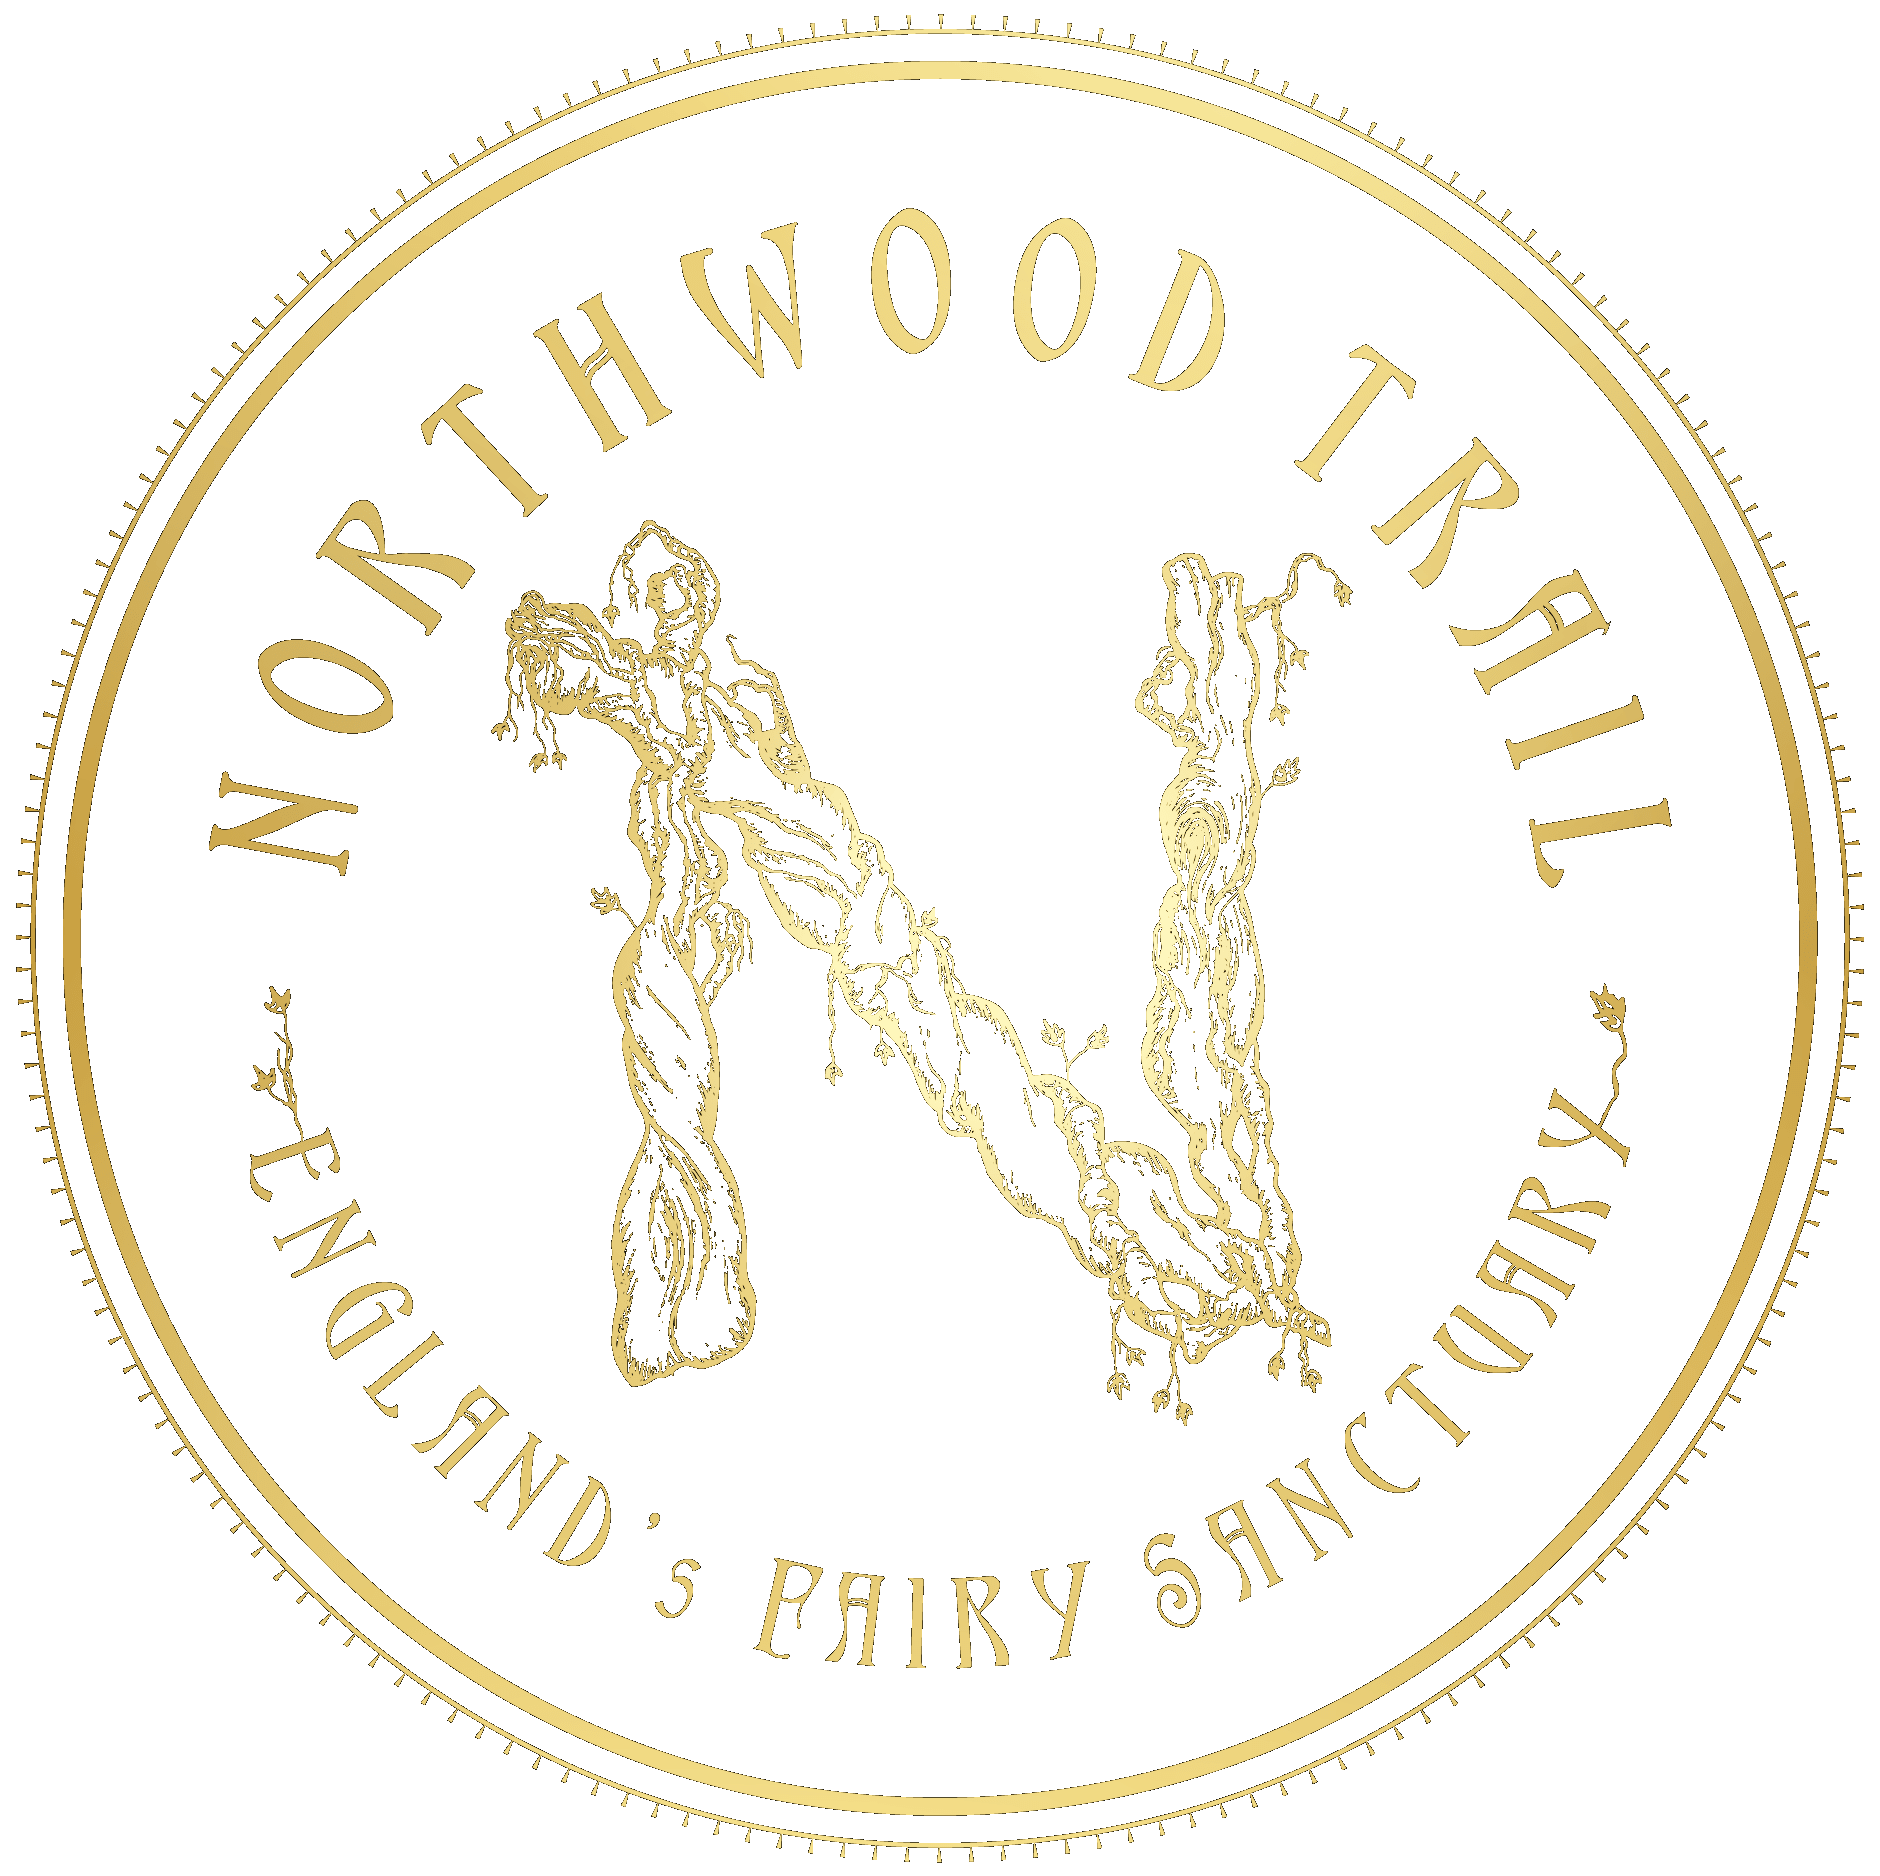 Outdoor café near York, Biodynamic woodland York, Northwood trail